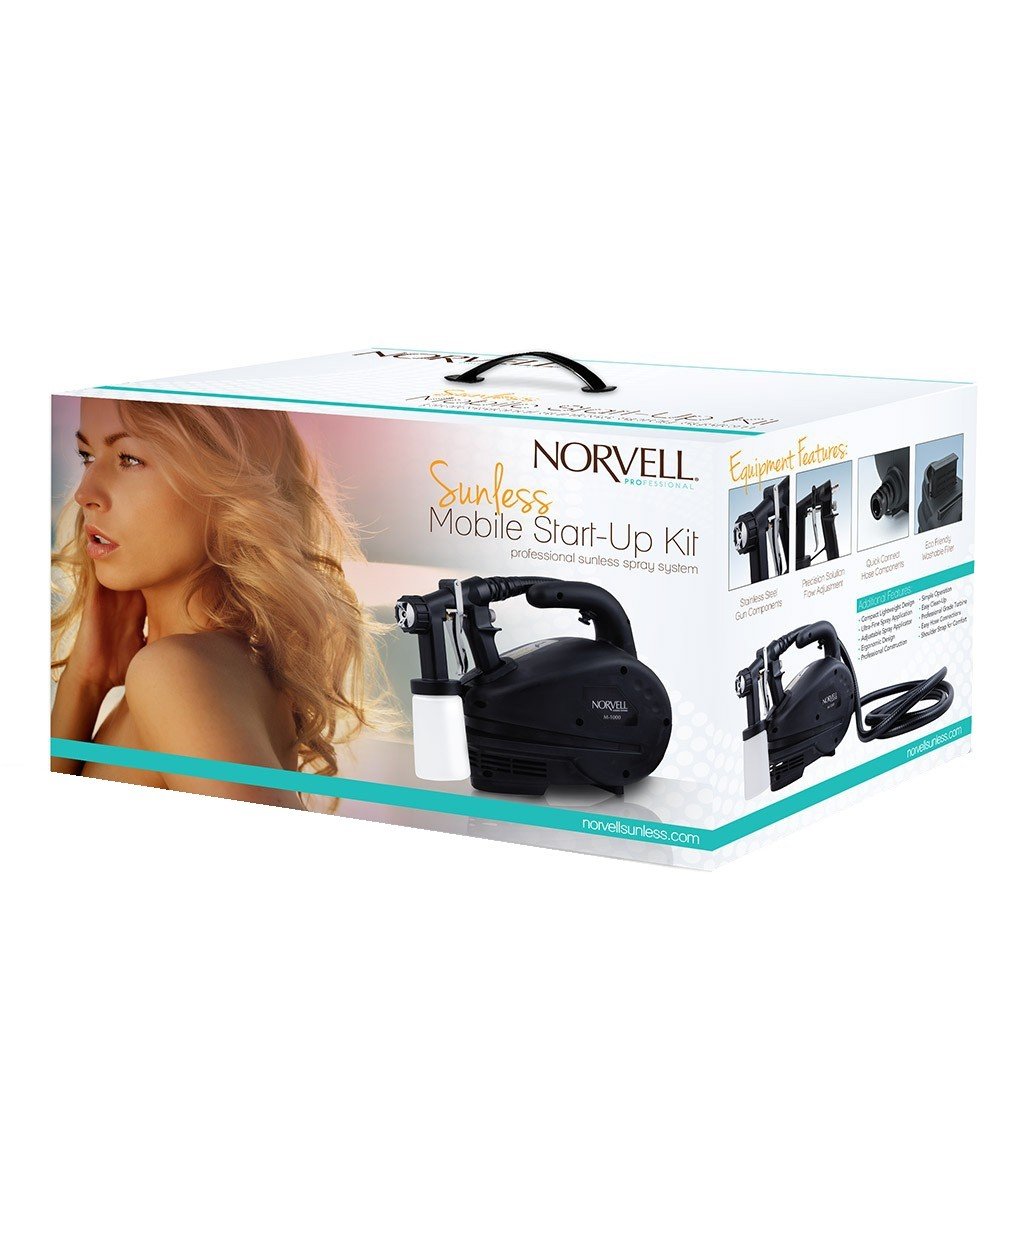 Norvell Sunless Mobile Start Up Kit